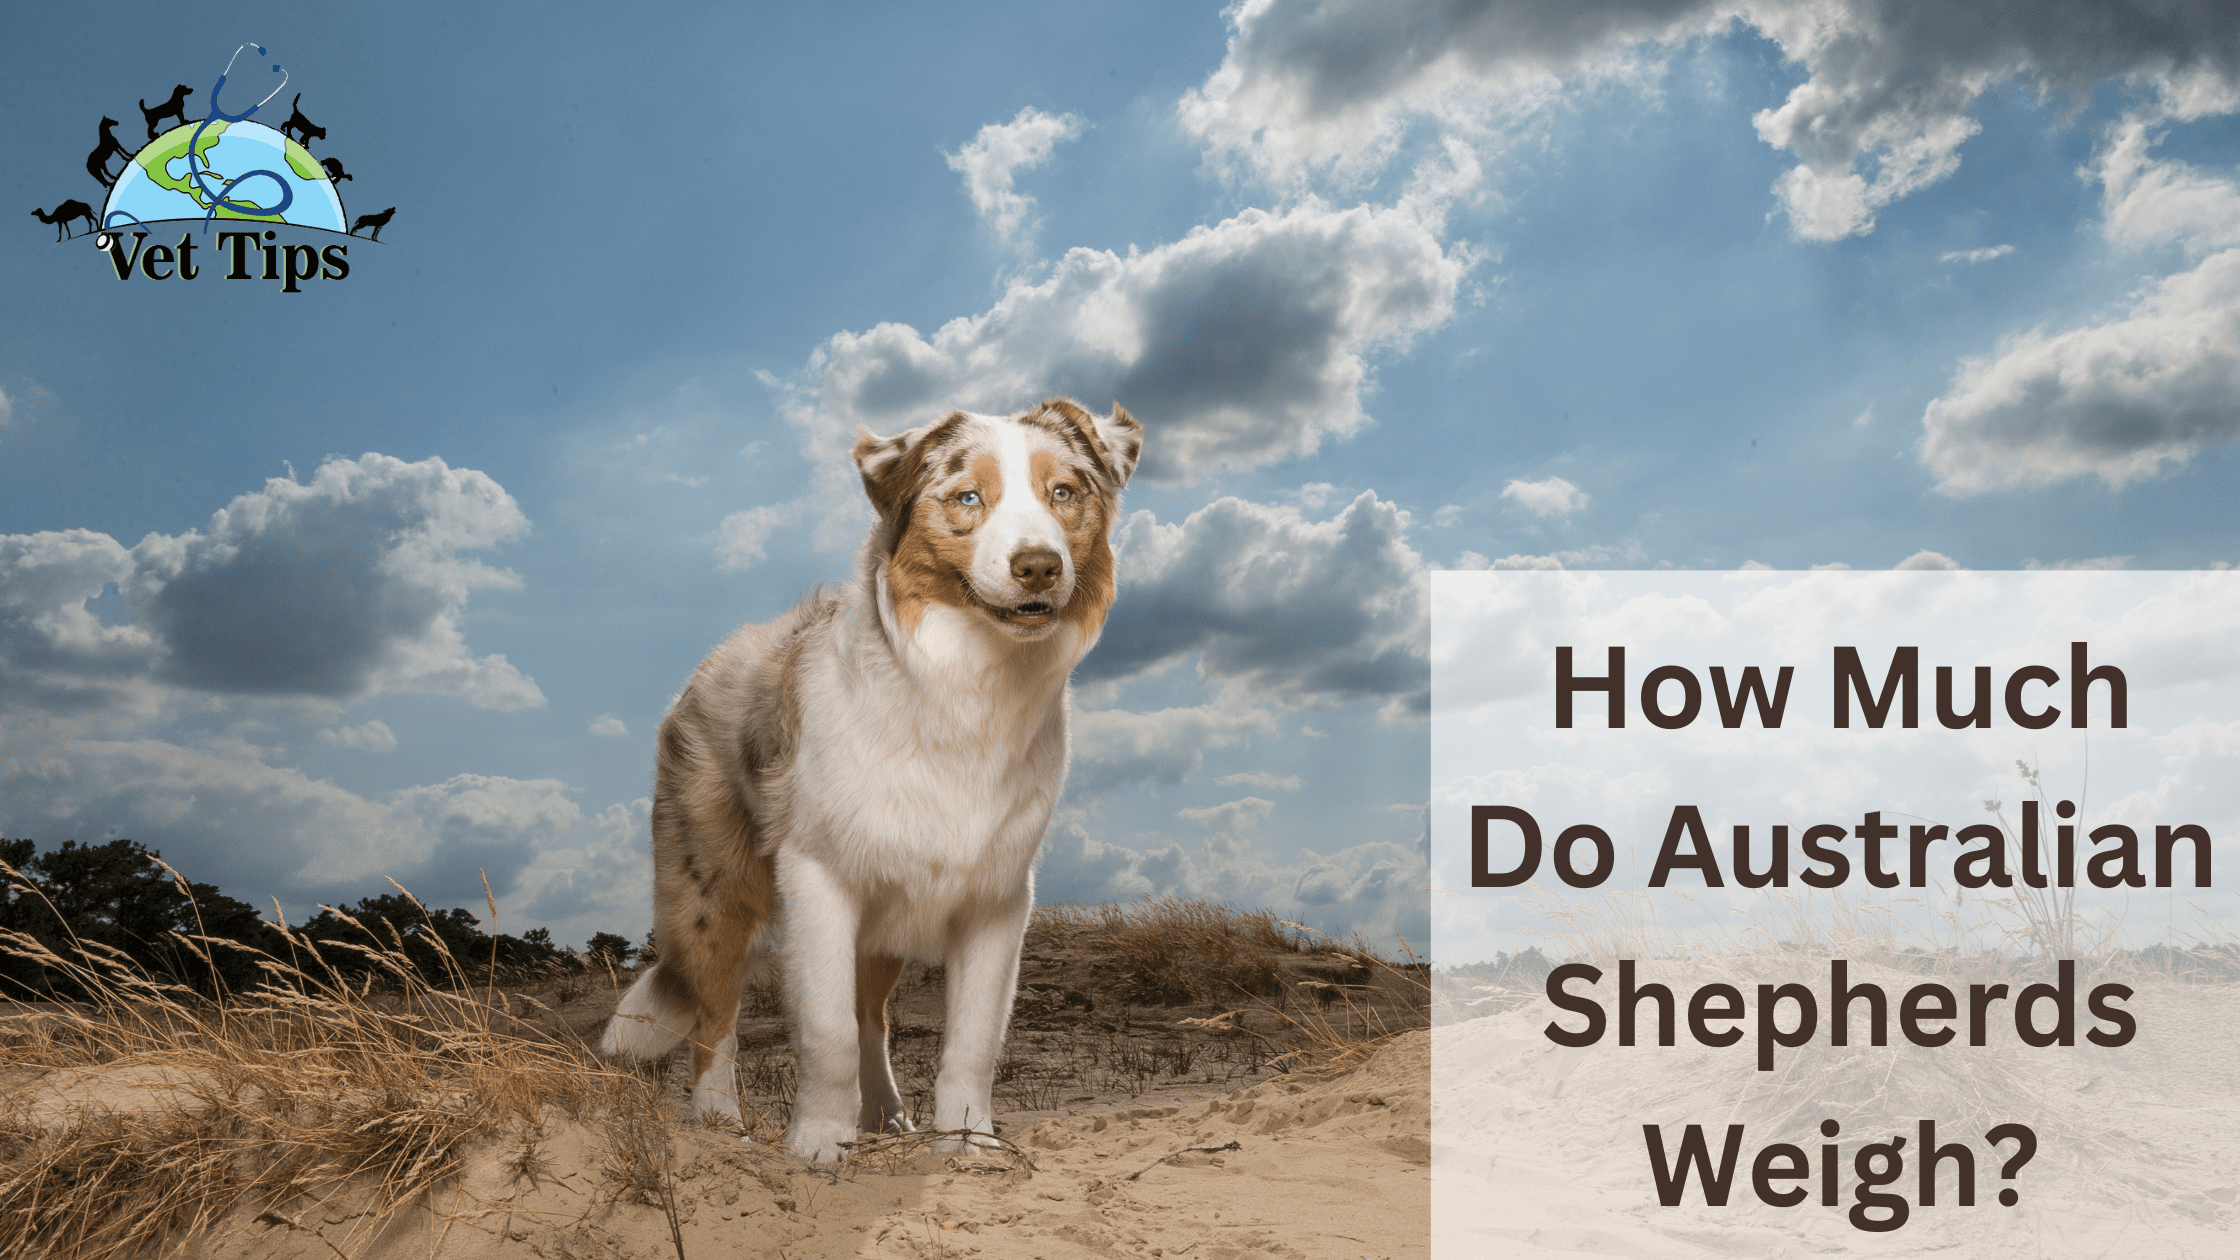 How Much Do Australian Shepherds Weigh?